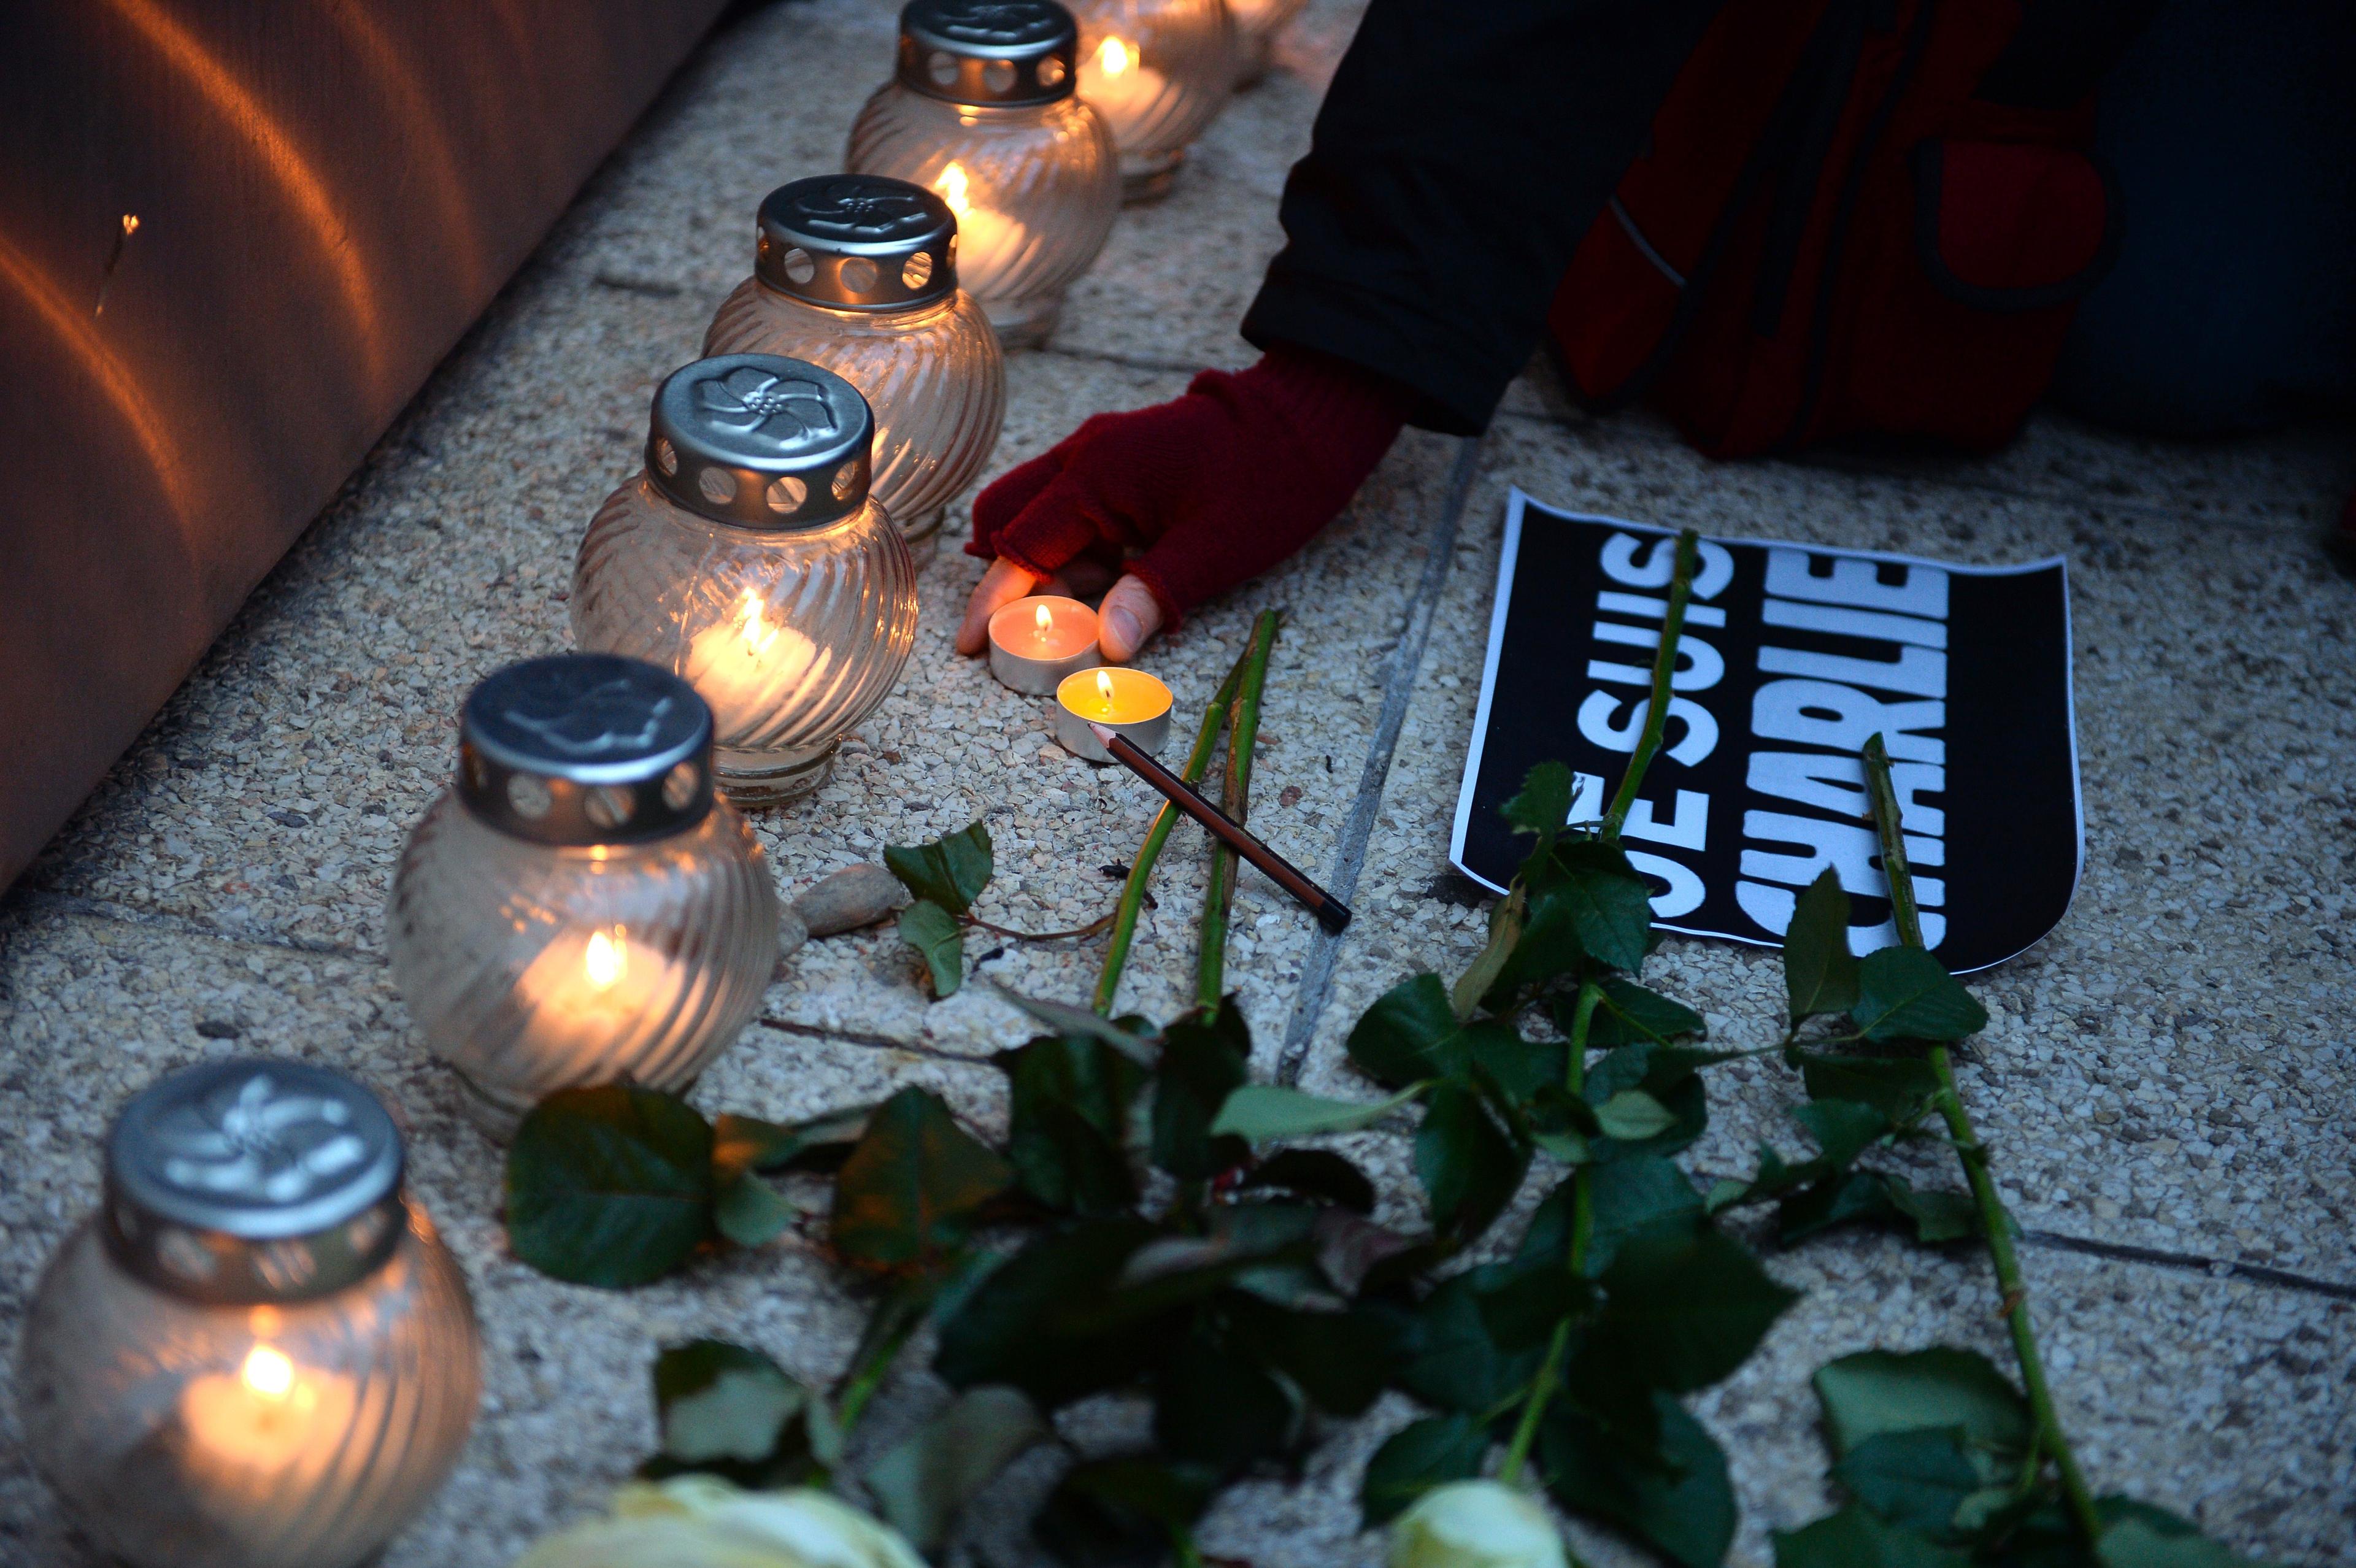 Frankrike drabbades för snart ett år sedan av terrorattacken mot tidningen Charlie Hebdo, där åtta journalister fanns bland de döda. Press Emblem Campaign befarar att världens journalister kan drabbas ännu värre av terrorn under 2016 än tidigare år. (Foto: Attila Kisbenedek/AFP/Getty Images)